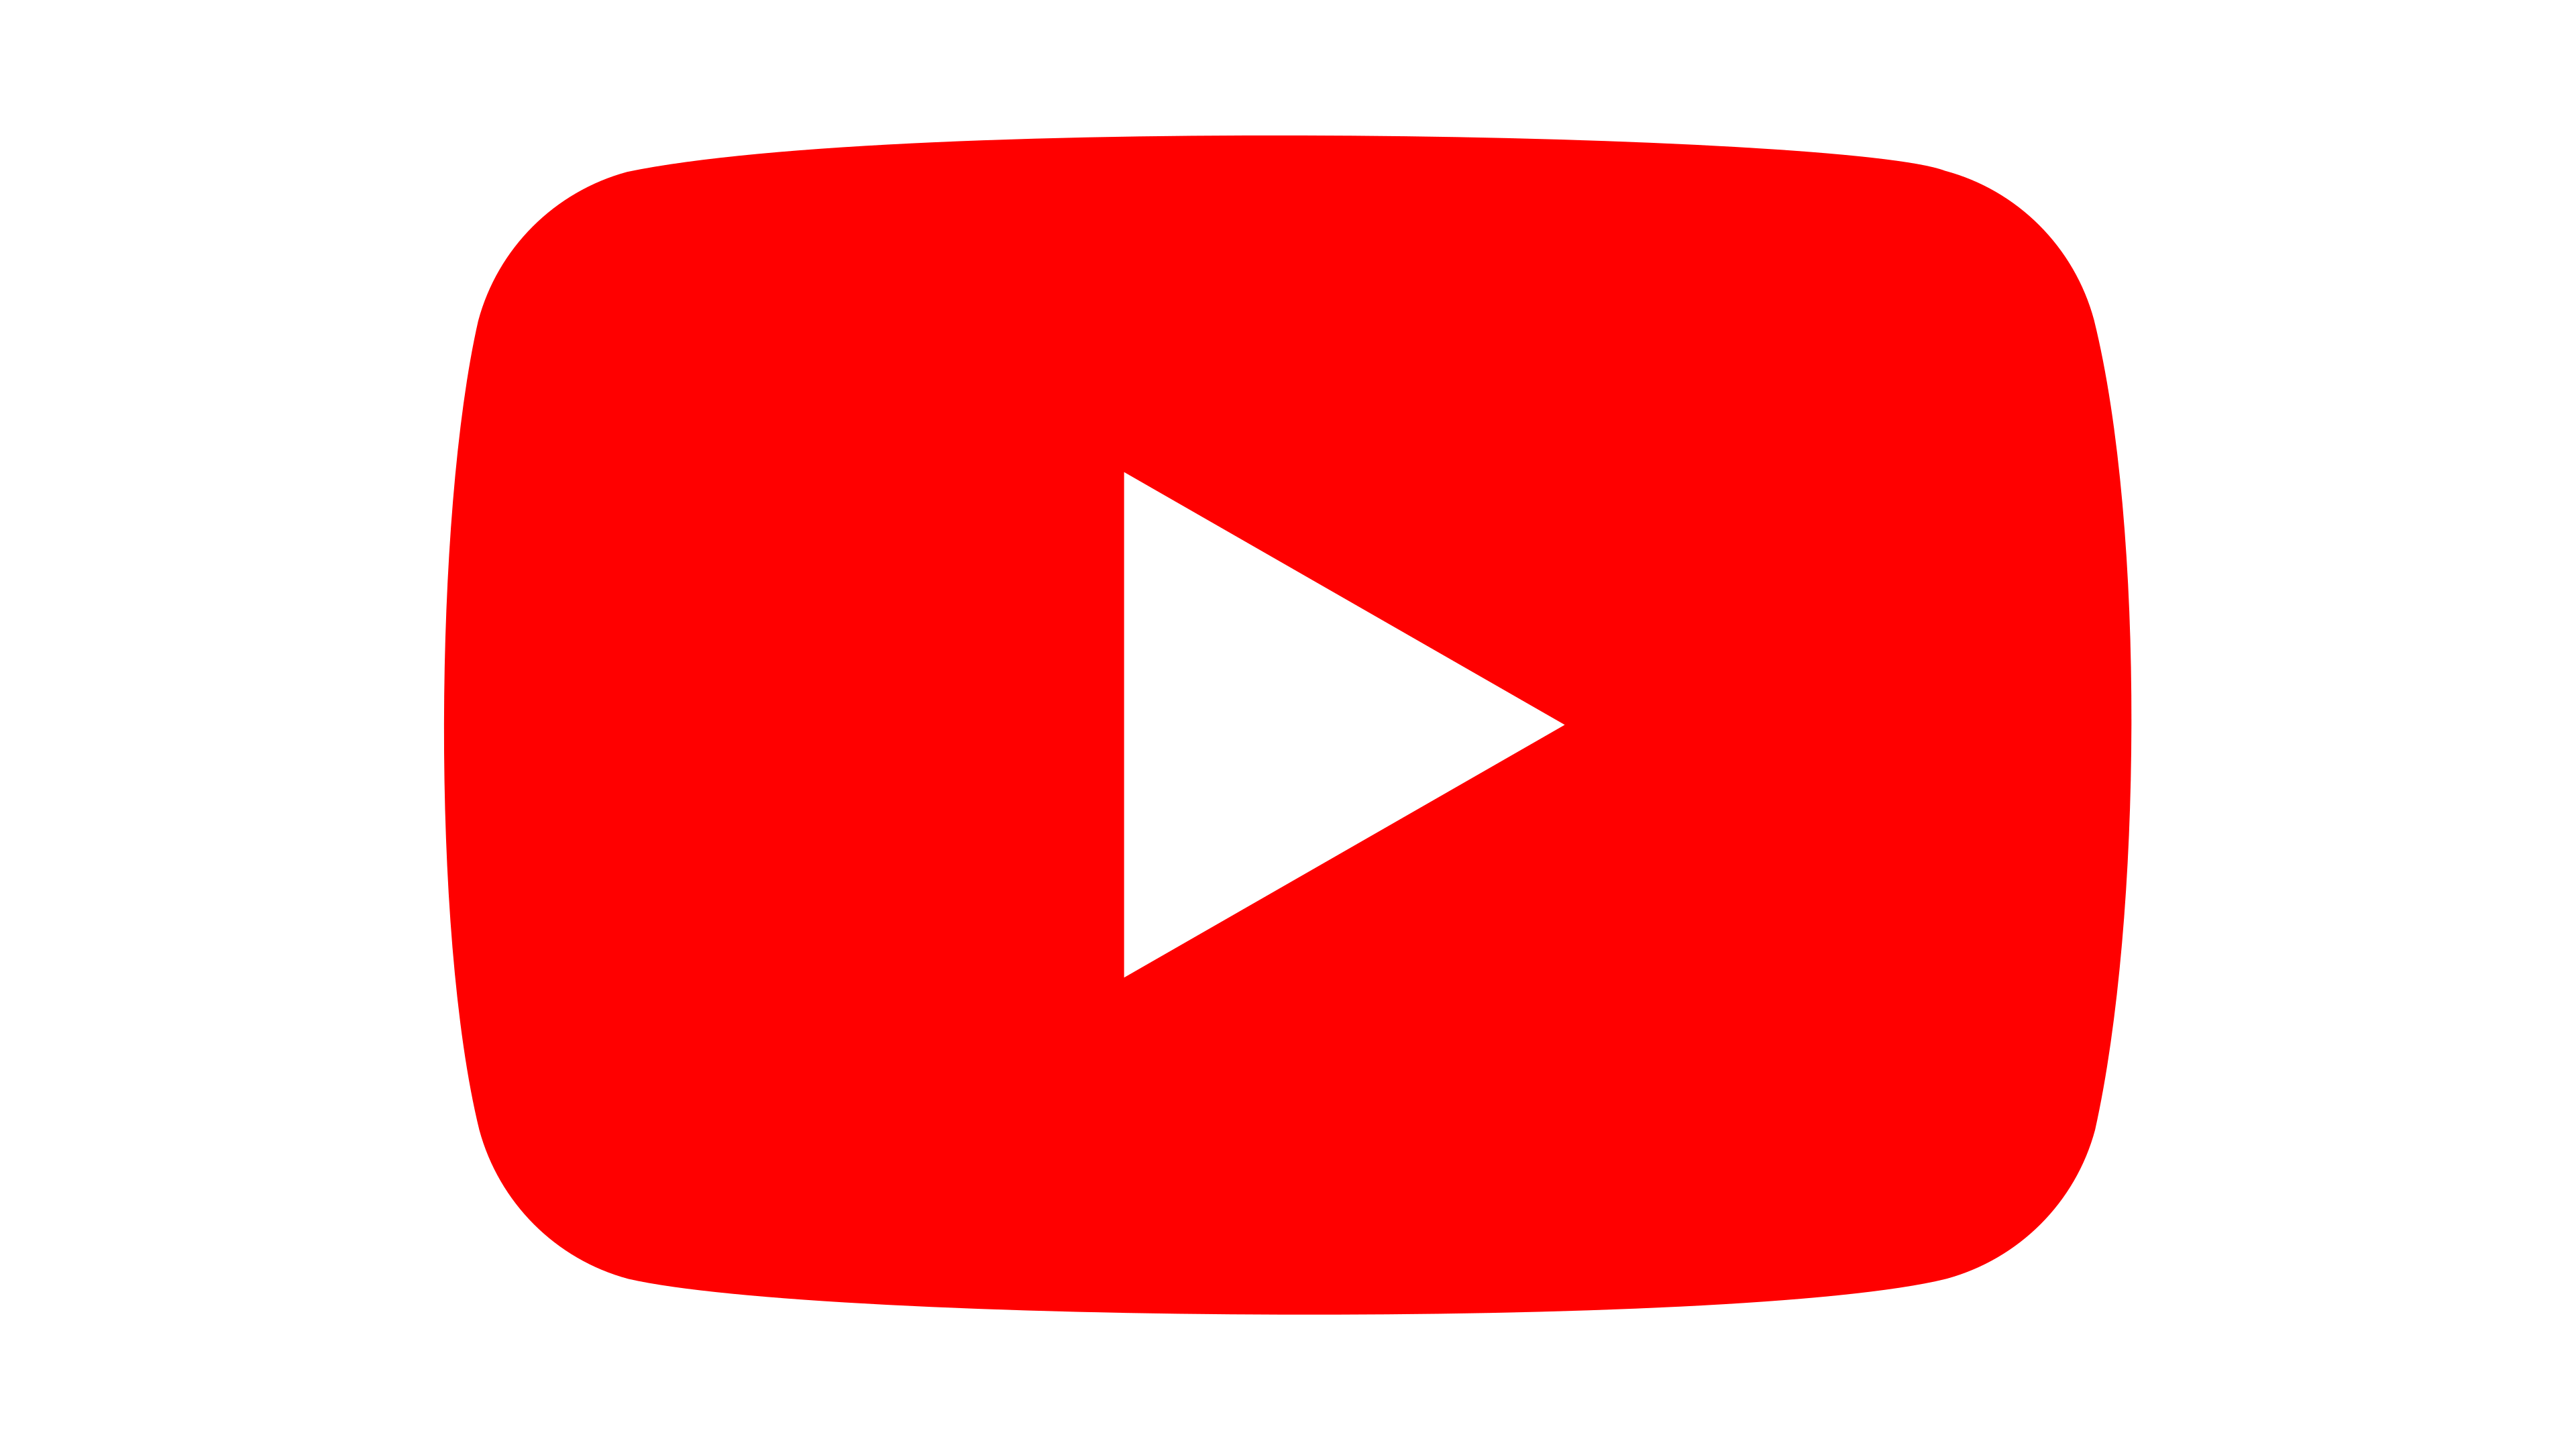 Biểu tượng YouTube là một trong những biểu tượng nổi tiếng nhất trên thế giới, đại diện cho nền tảng chia sẻ video lớn nhất thế giới. Hình ảnh biểu tượng YouTube sẽ giúp bạn thấy được tầm quan trọng và ảnh hưởng của nó đến thế giới hiện nay.